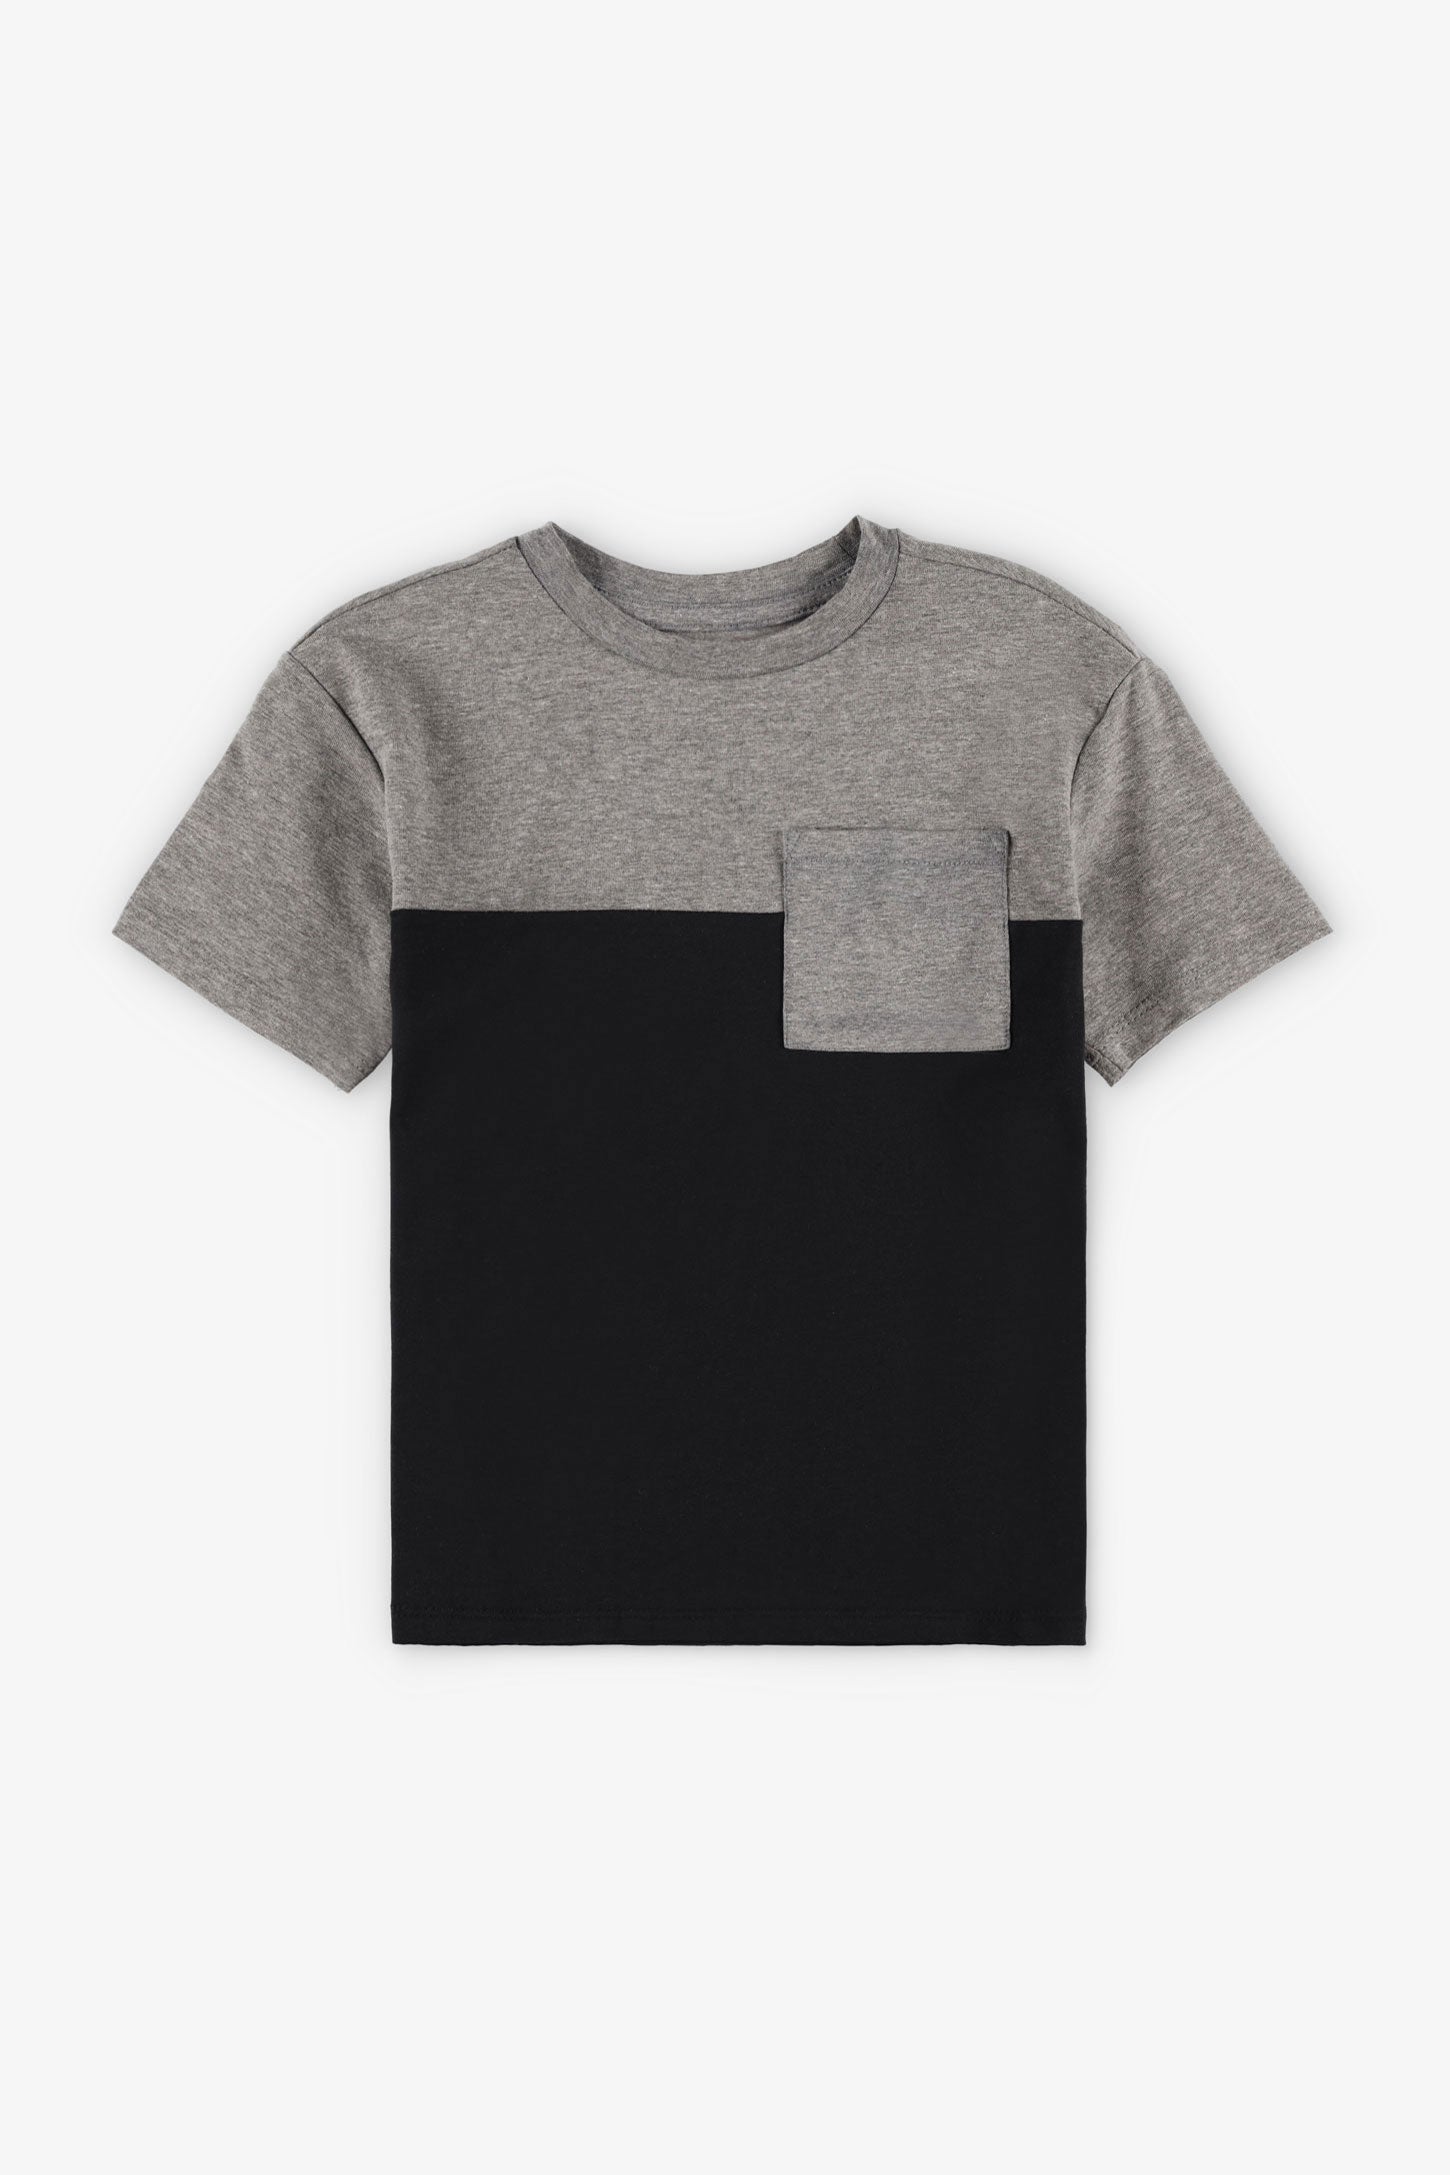 T-shirt à poche en coton, 2/20$ - Enfant garçon && NOIR